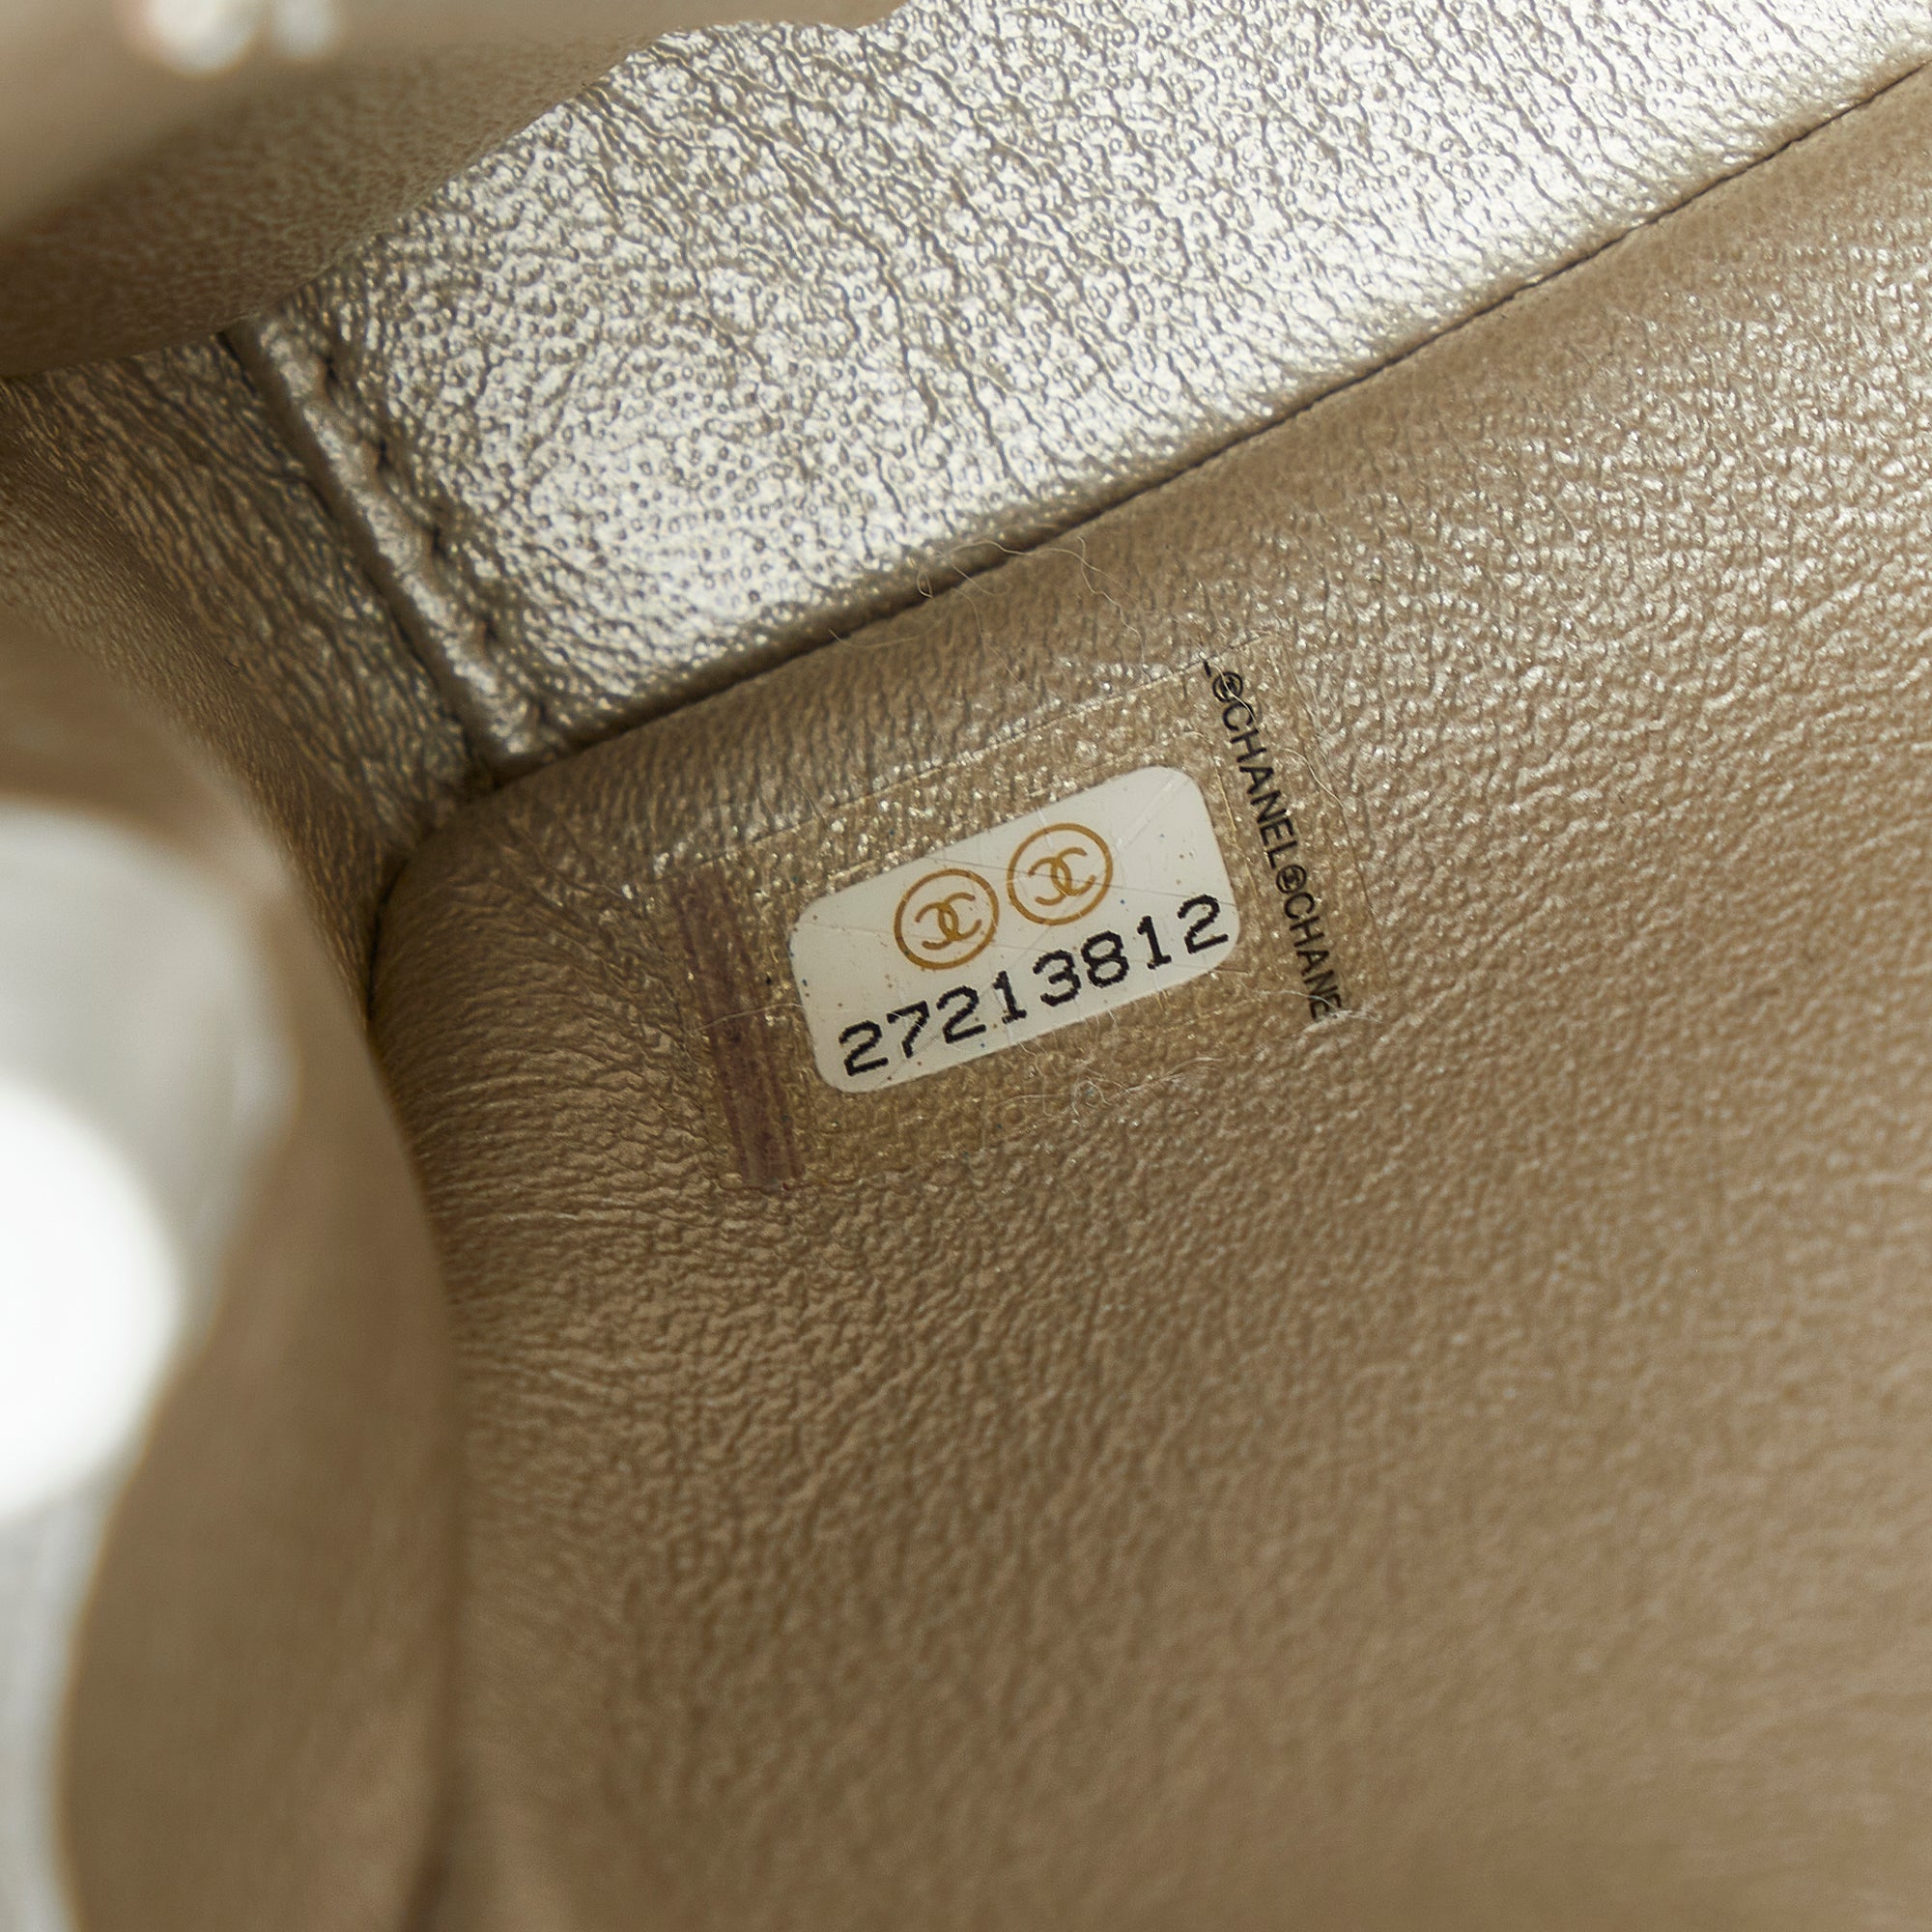 White Chanel Captain Gold Belt Bag - Designer Revival